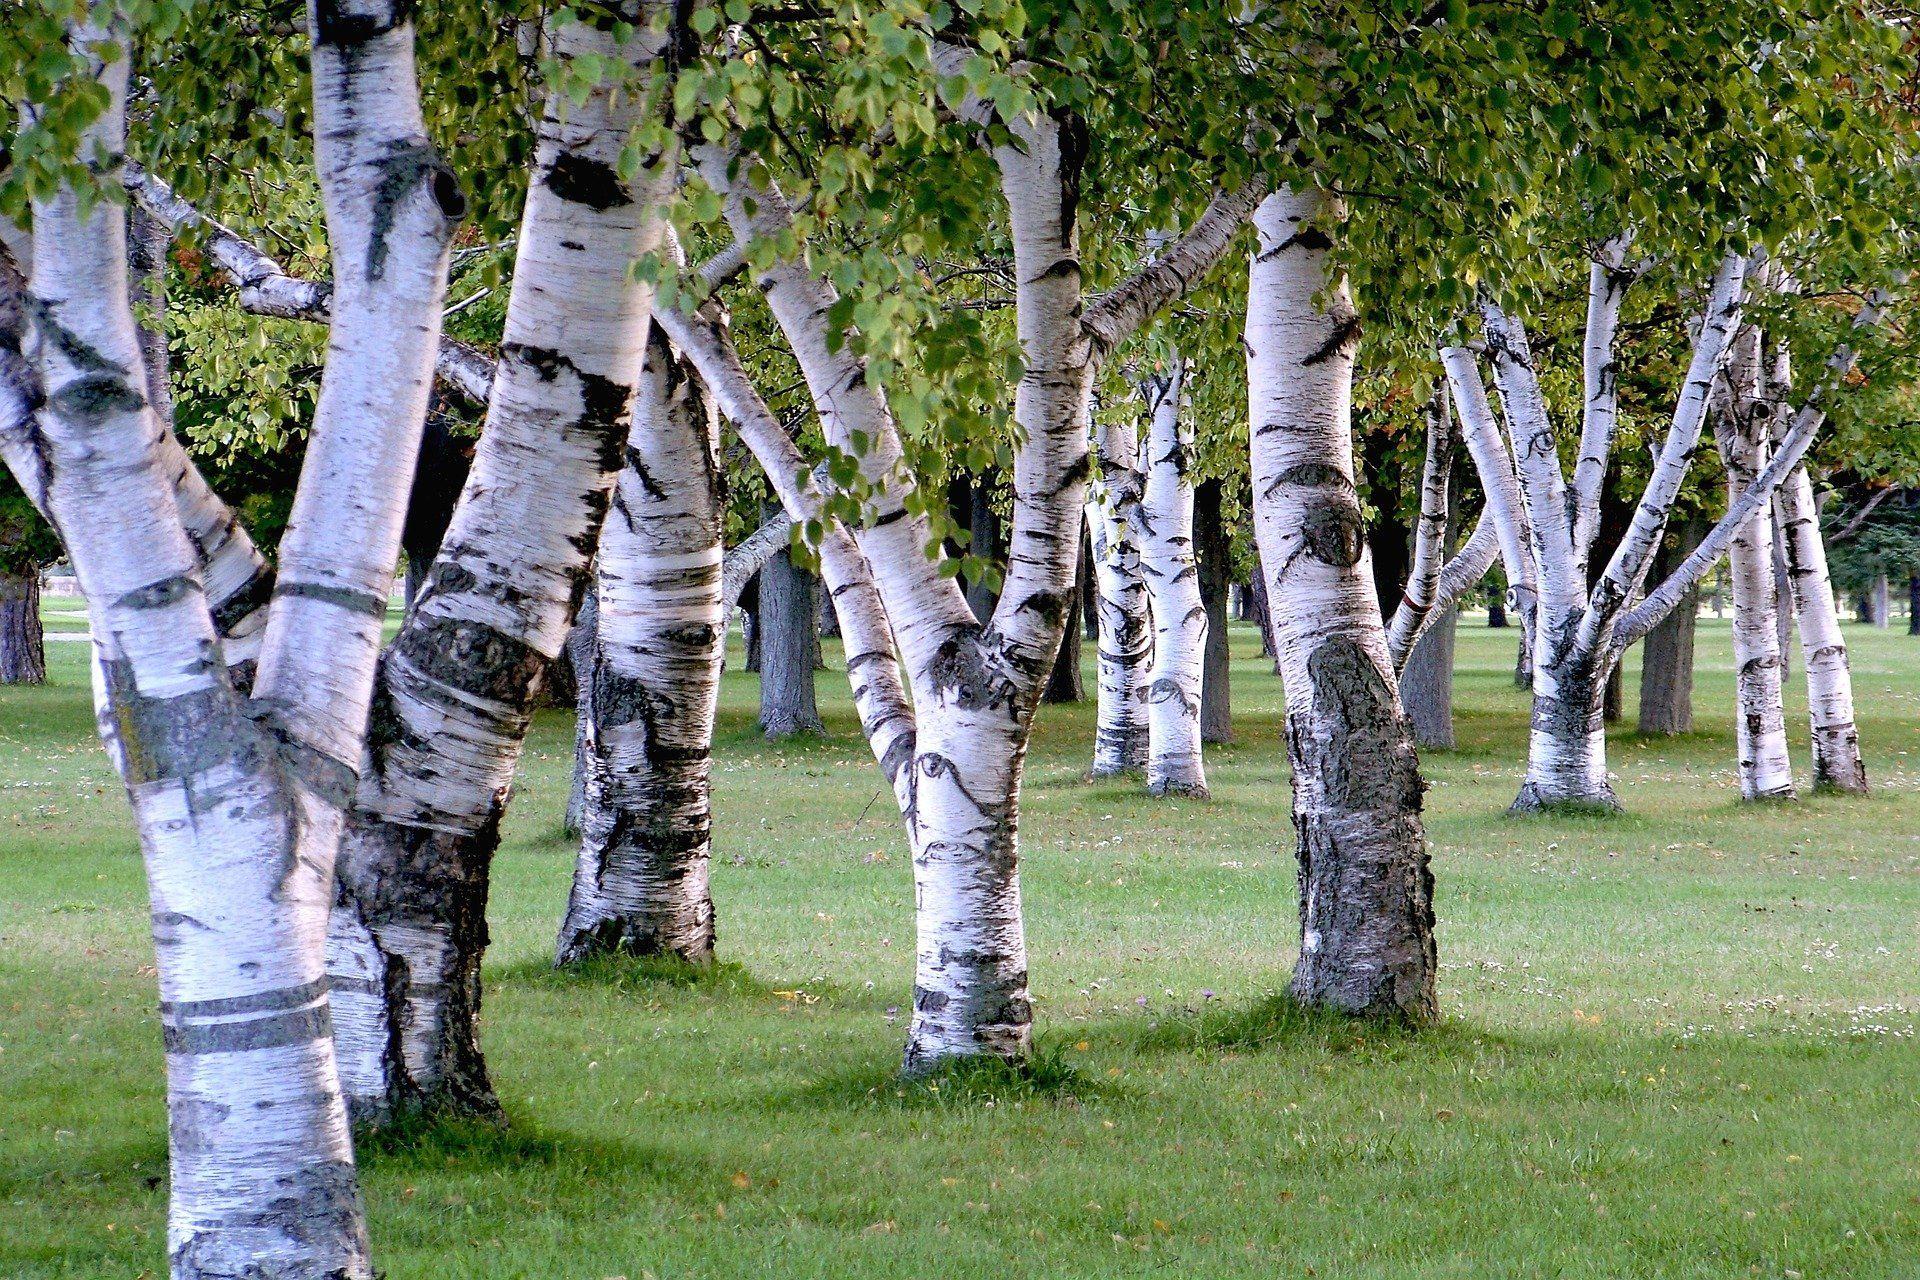 Swinger of birch trees